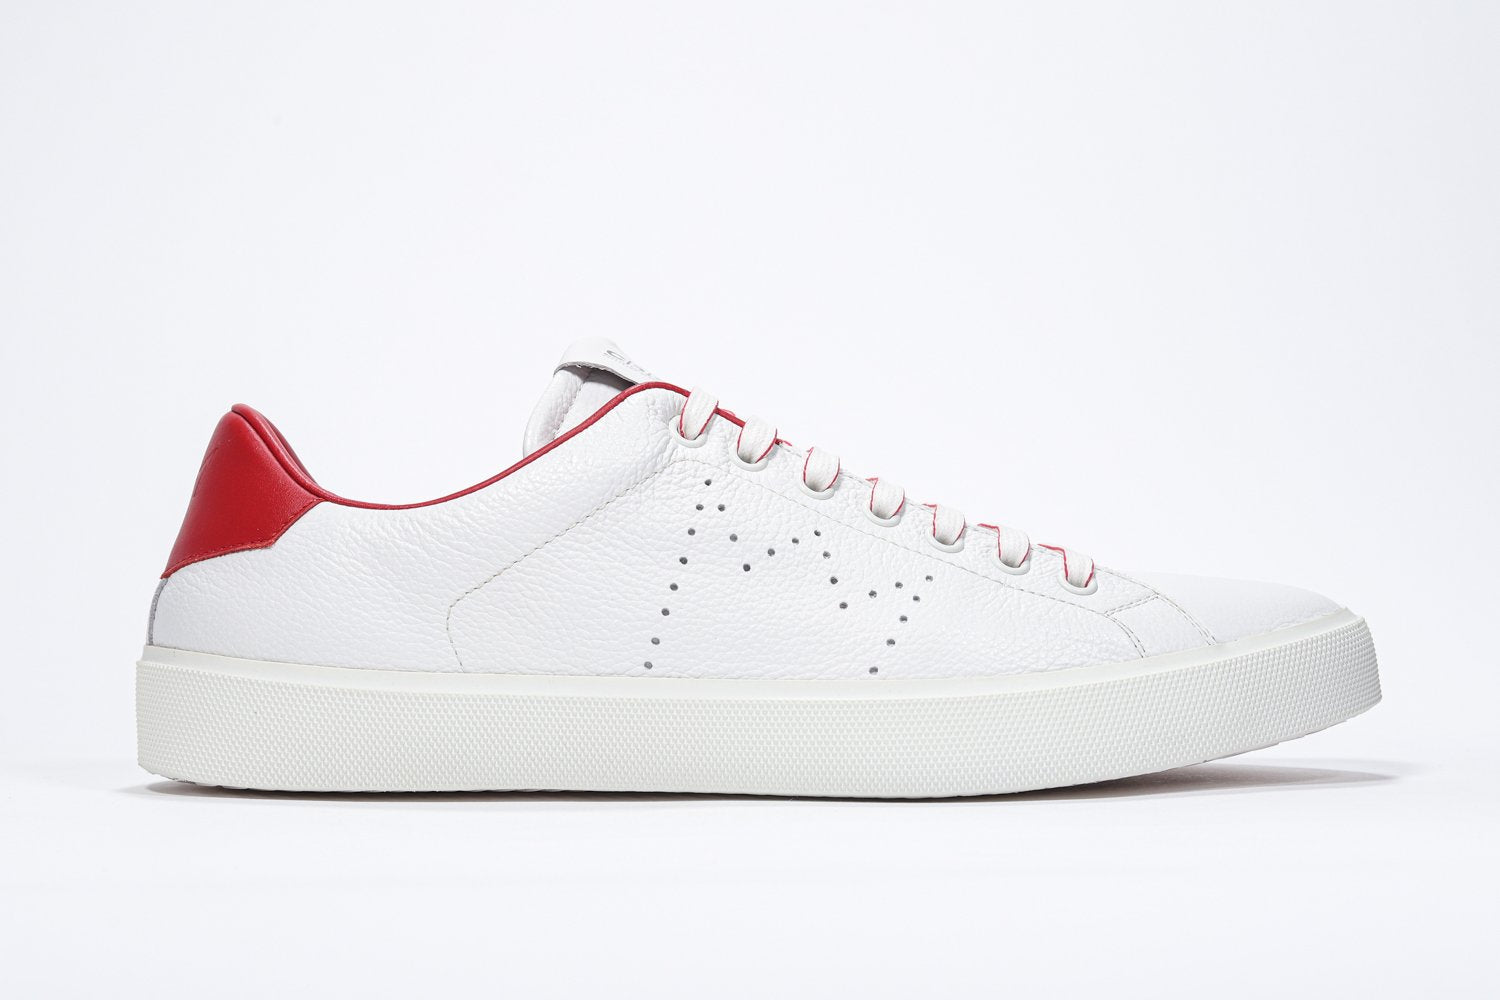 Weißes Low-Top-Profil sneaker mit roten Details und perforiertem Kronenlogo auf dem Schaft. Schaft aus Vollleder und weiße Gummisohle.